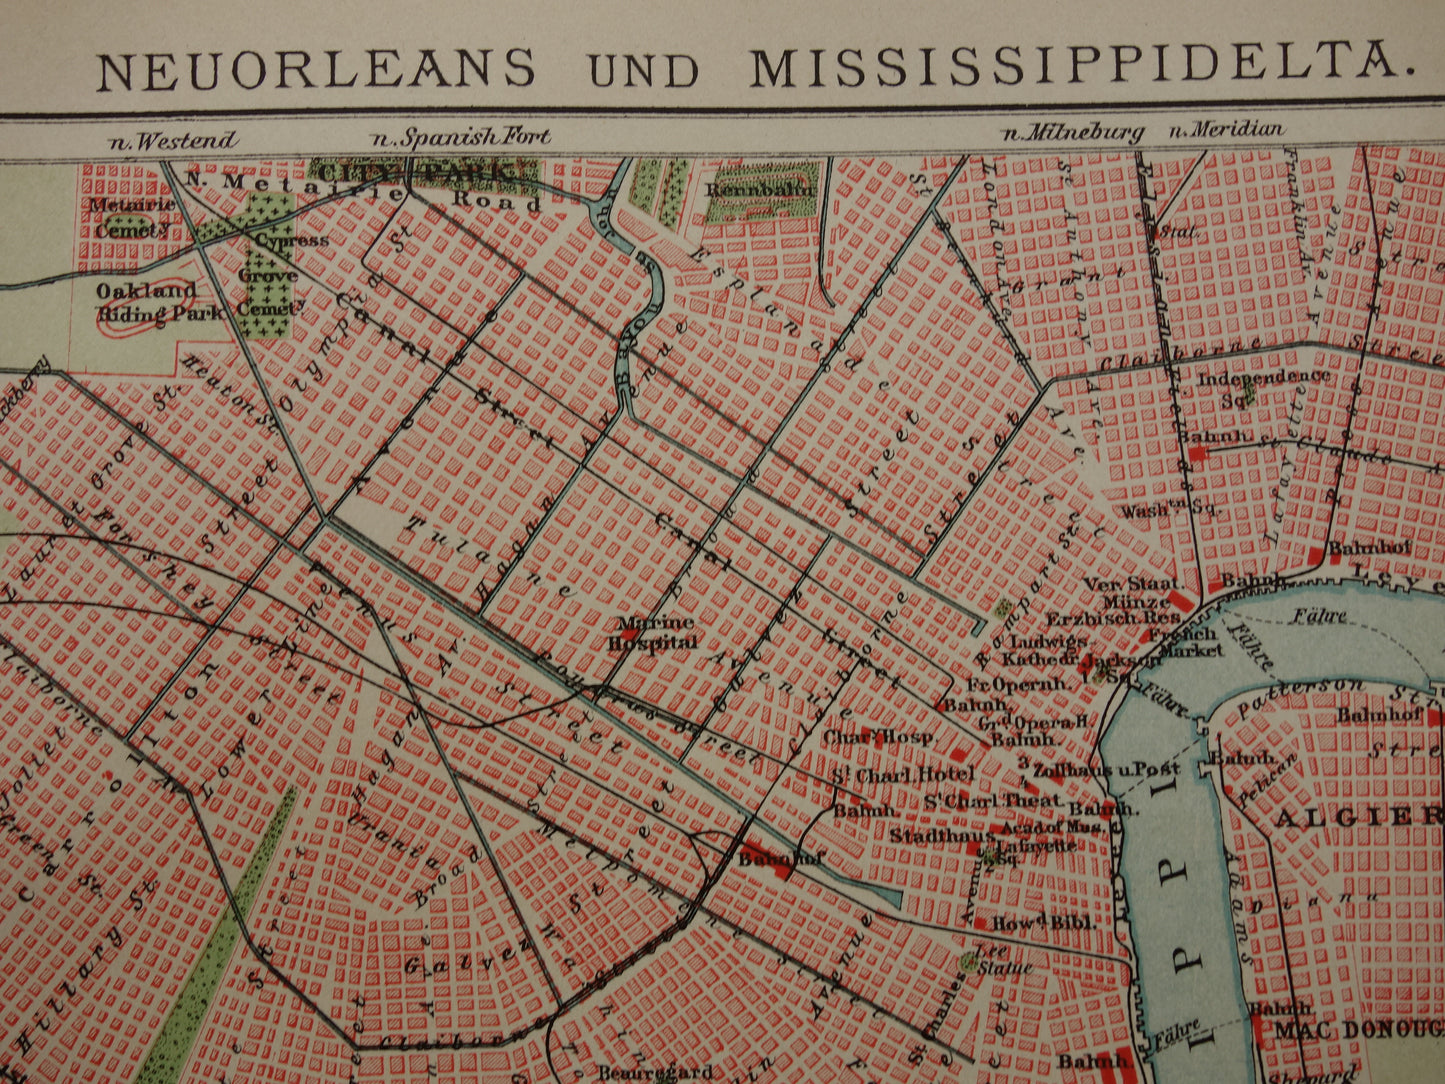 New Orleans oude plattegrond uit 1905 originele antieke Duitse kaart van de New Orleans en Mississippi delta met jaartal